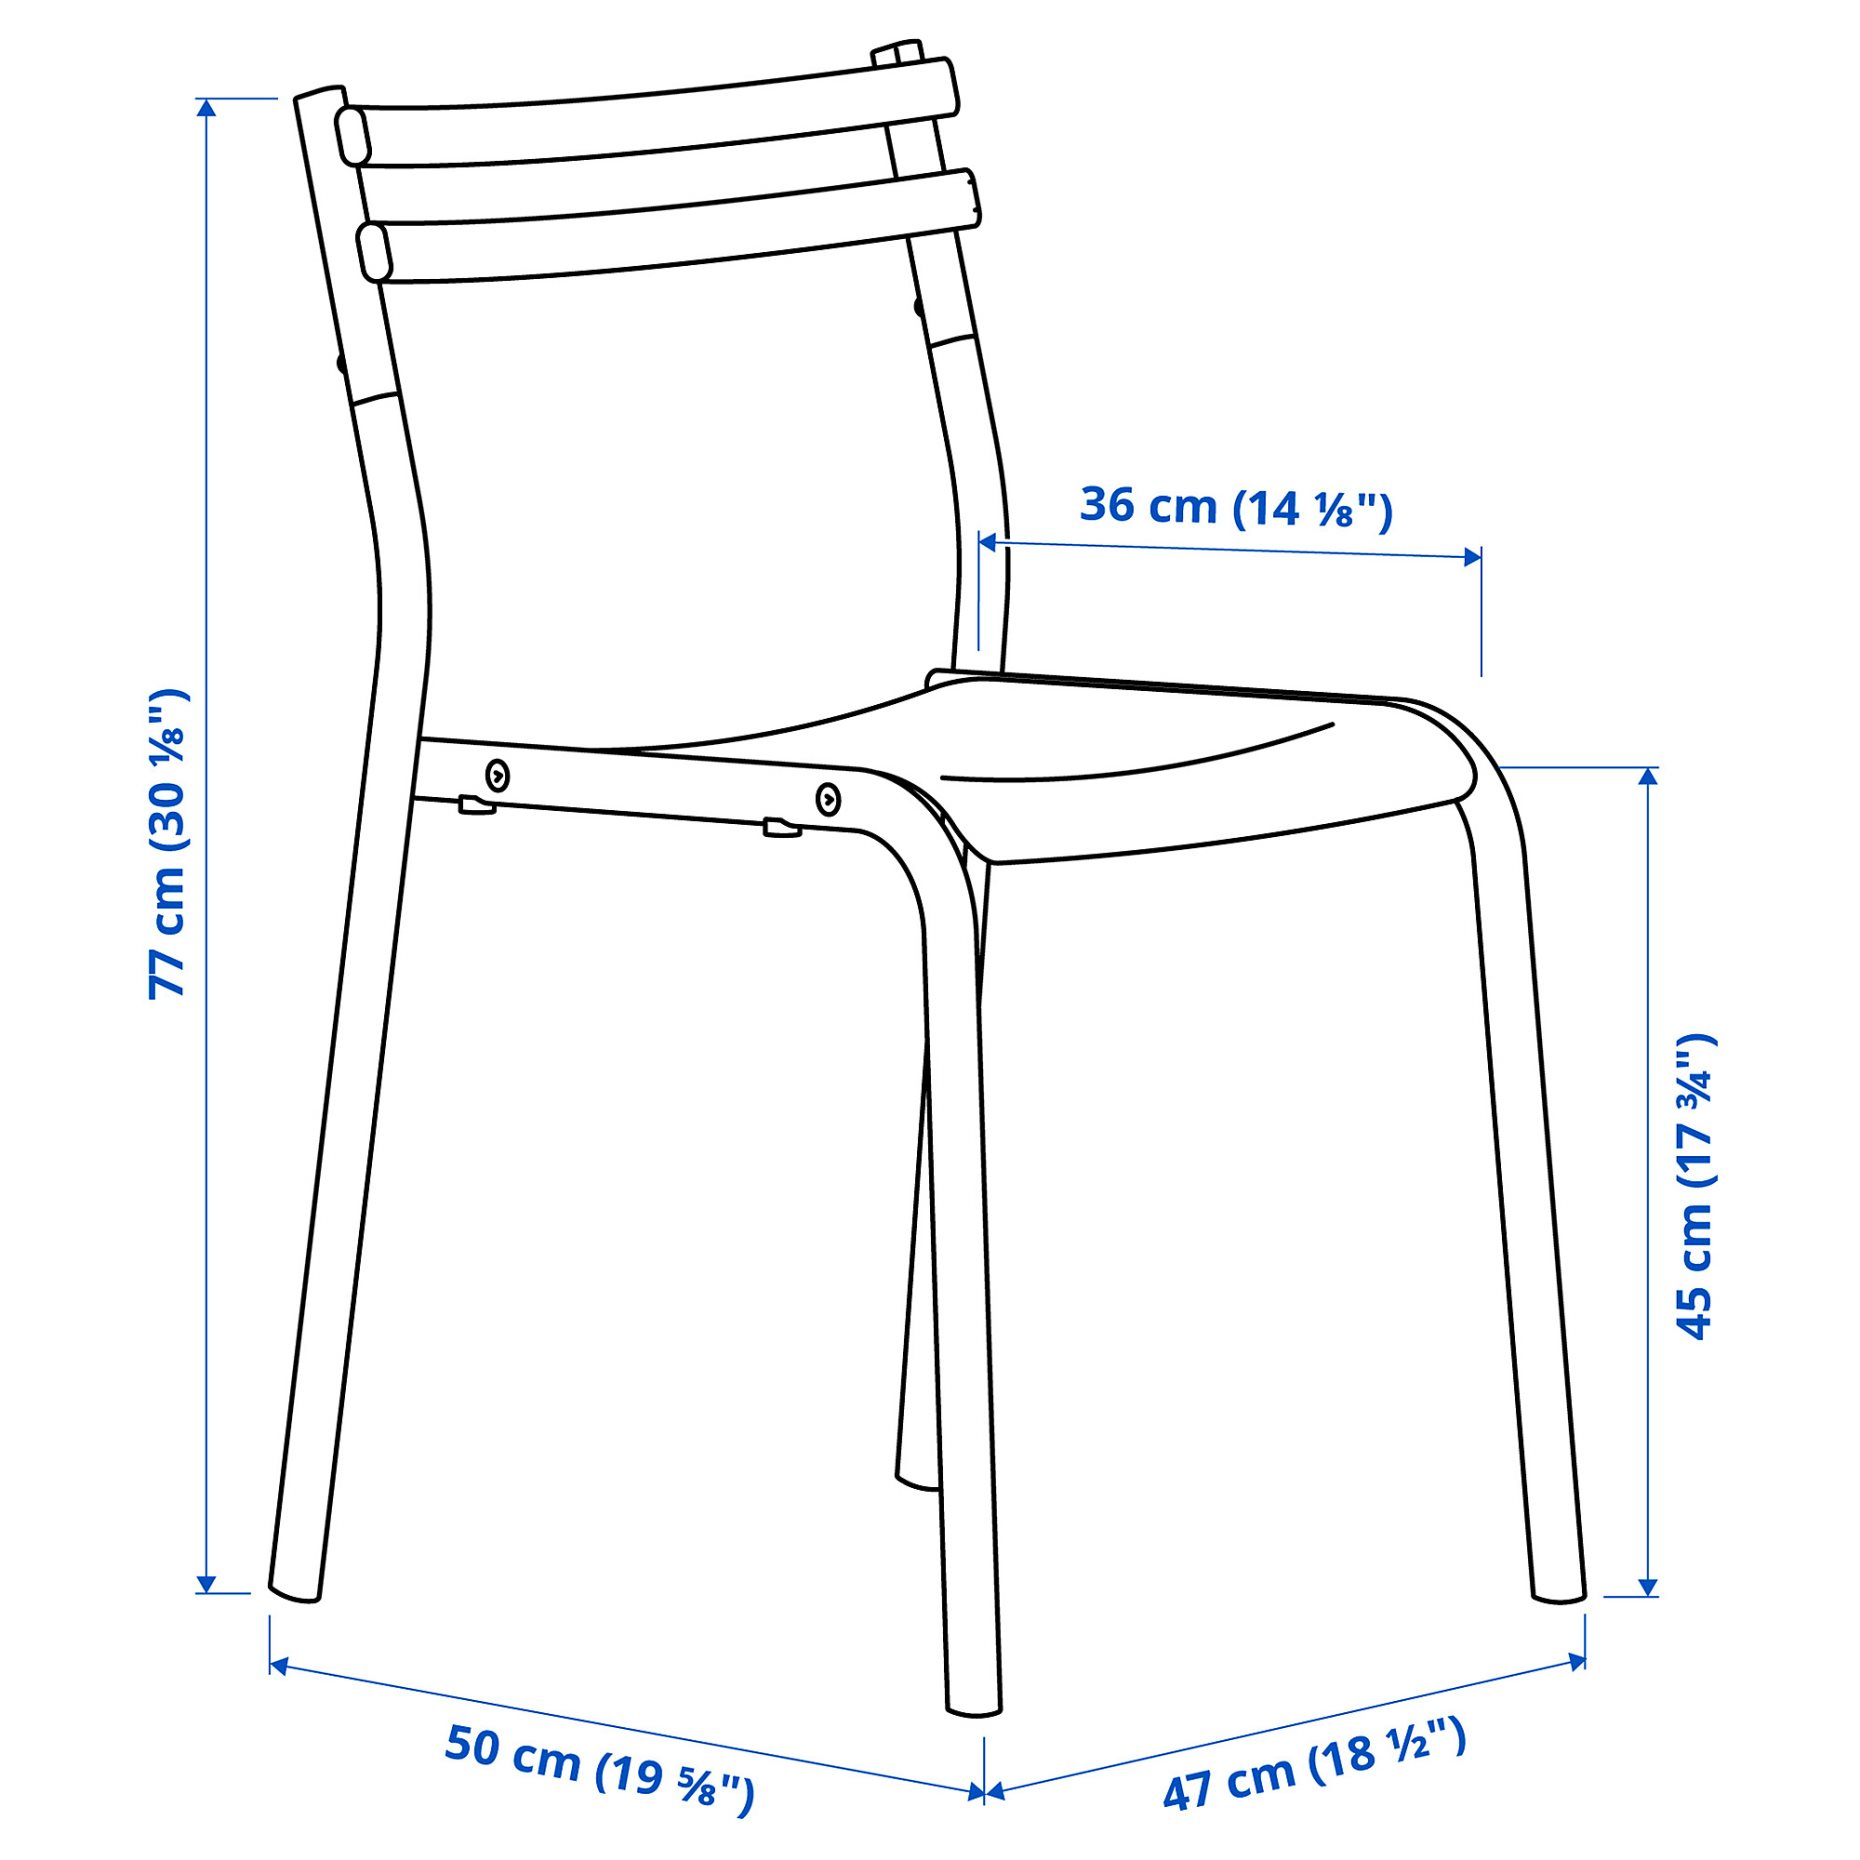 GENESÖN, καρέκλα/μέταλλο, 805.677.96